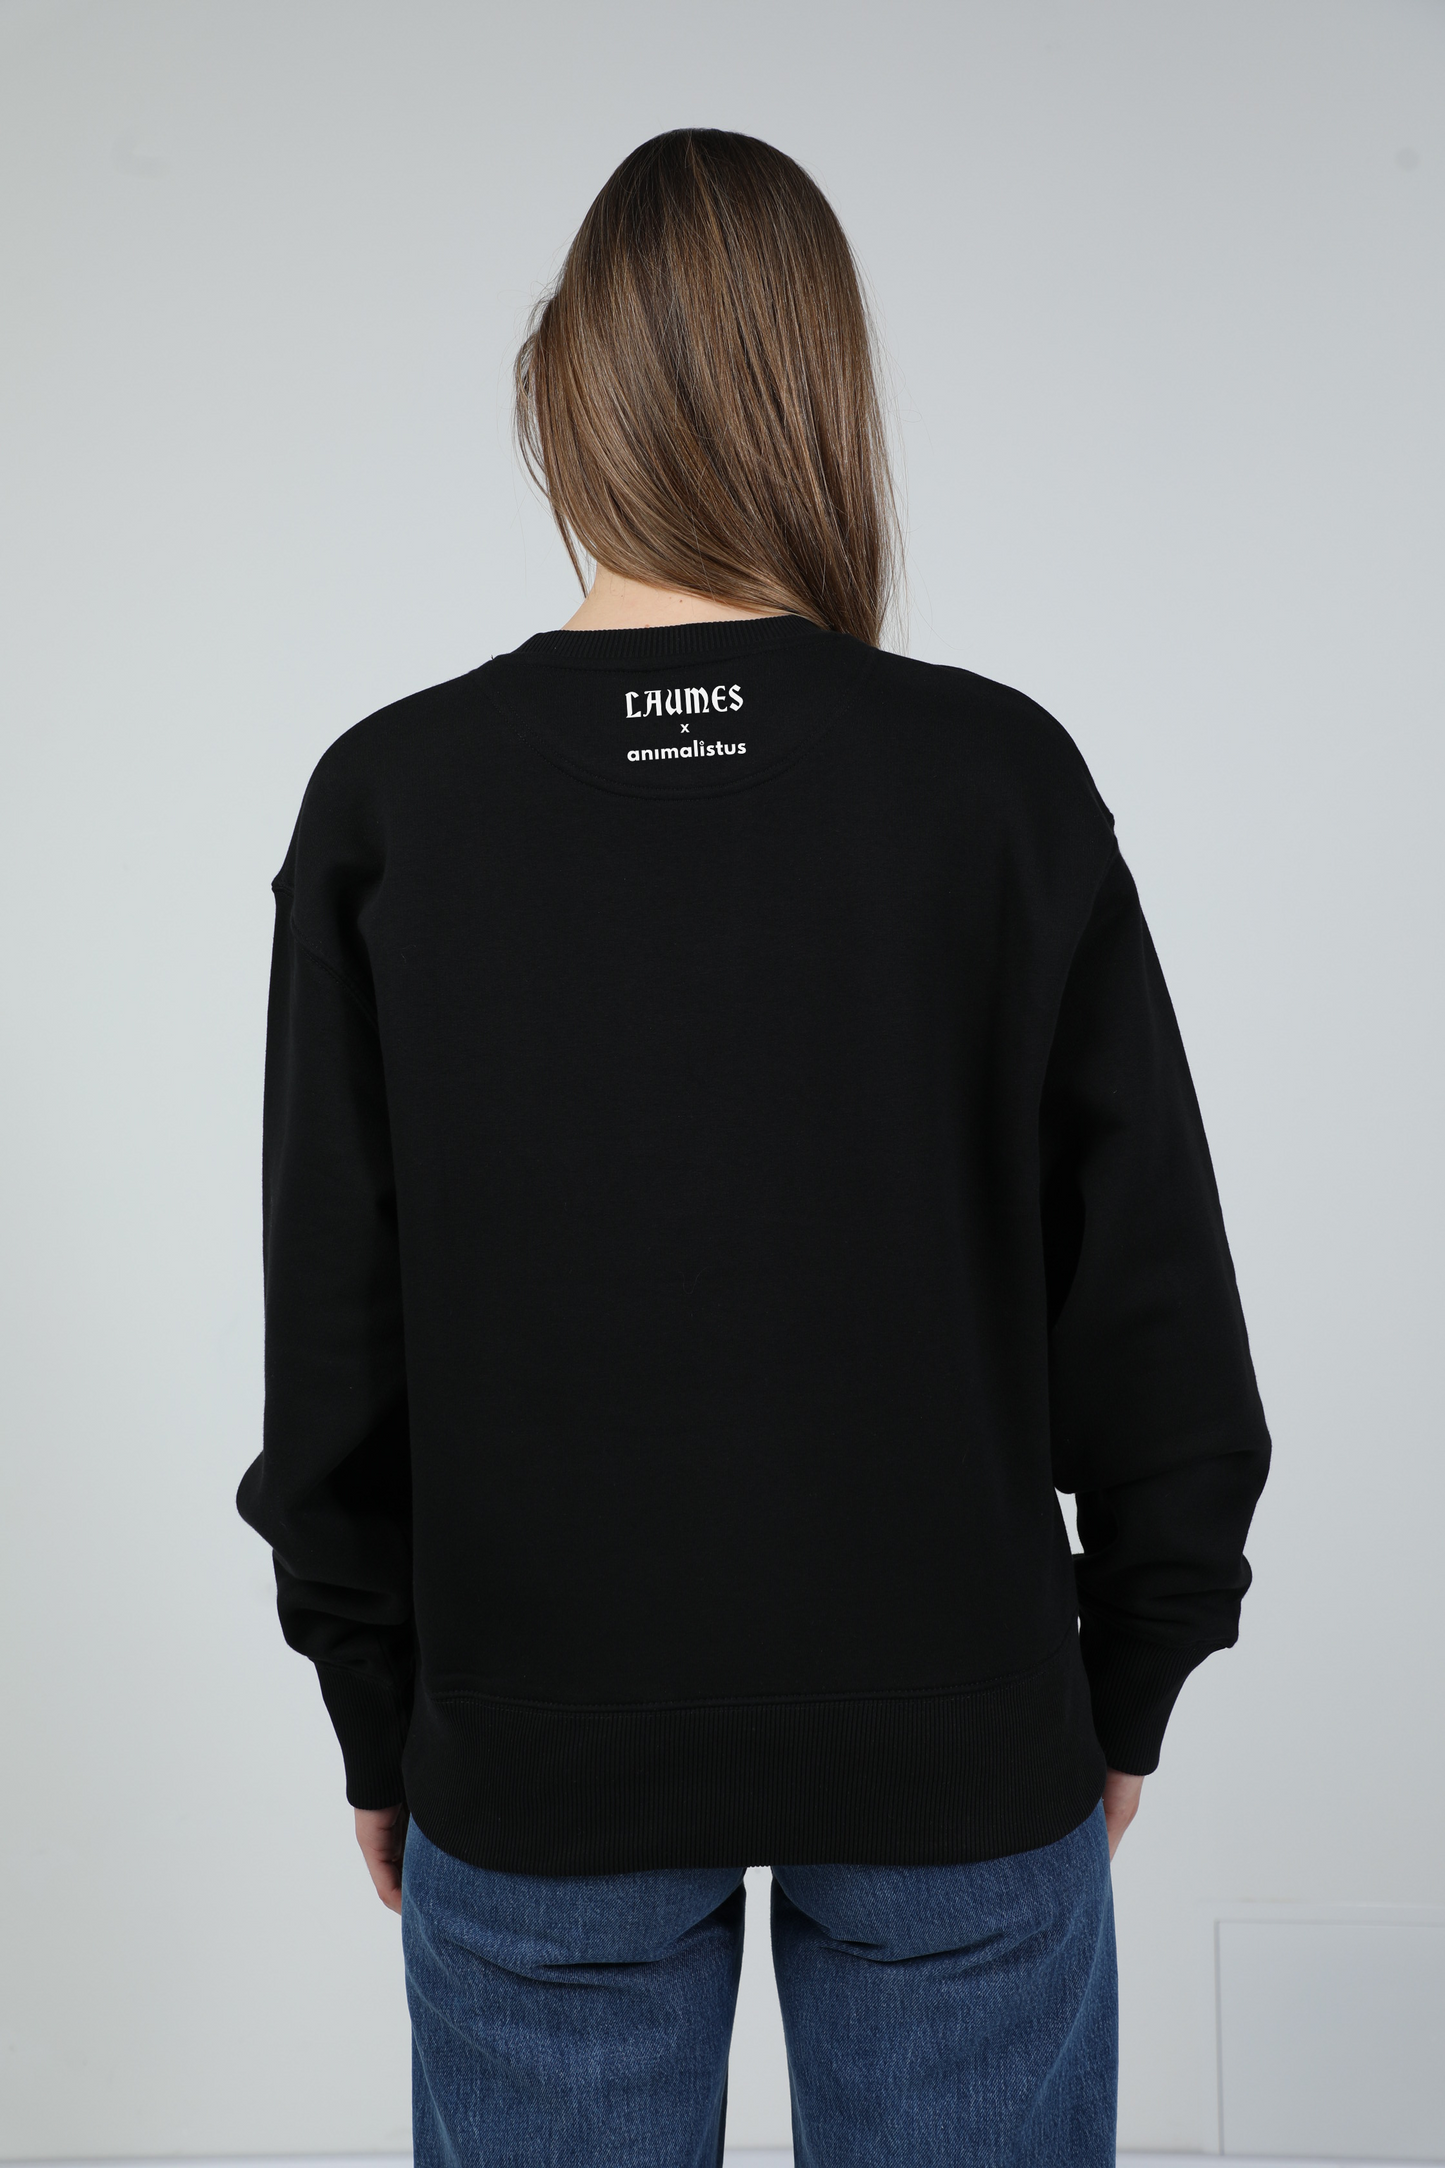 Laumės x animalistus | Crew neck sweatshirt with dog. Oversize fit | Unisex